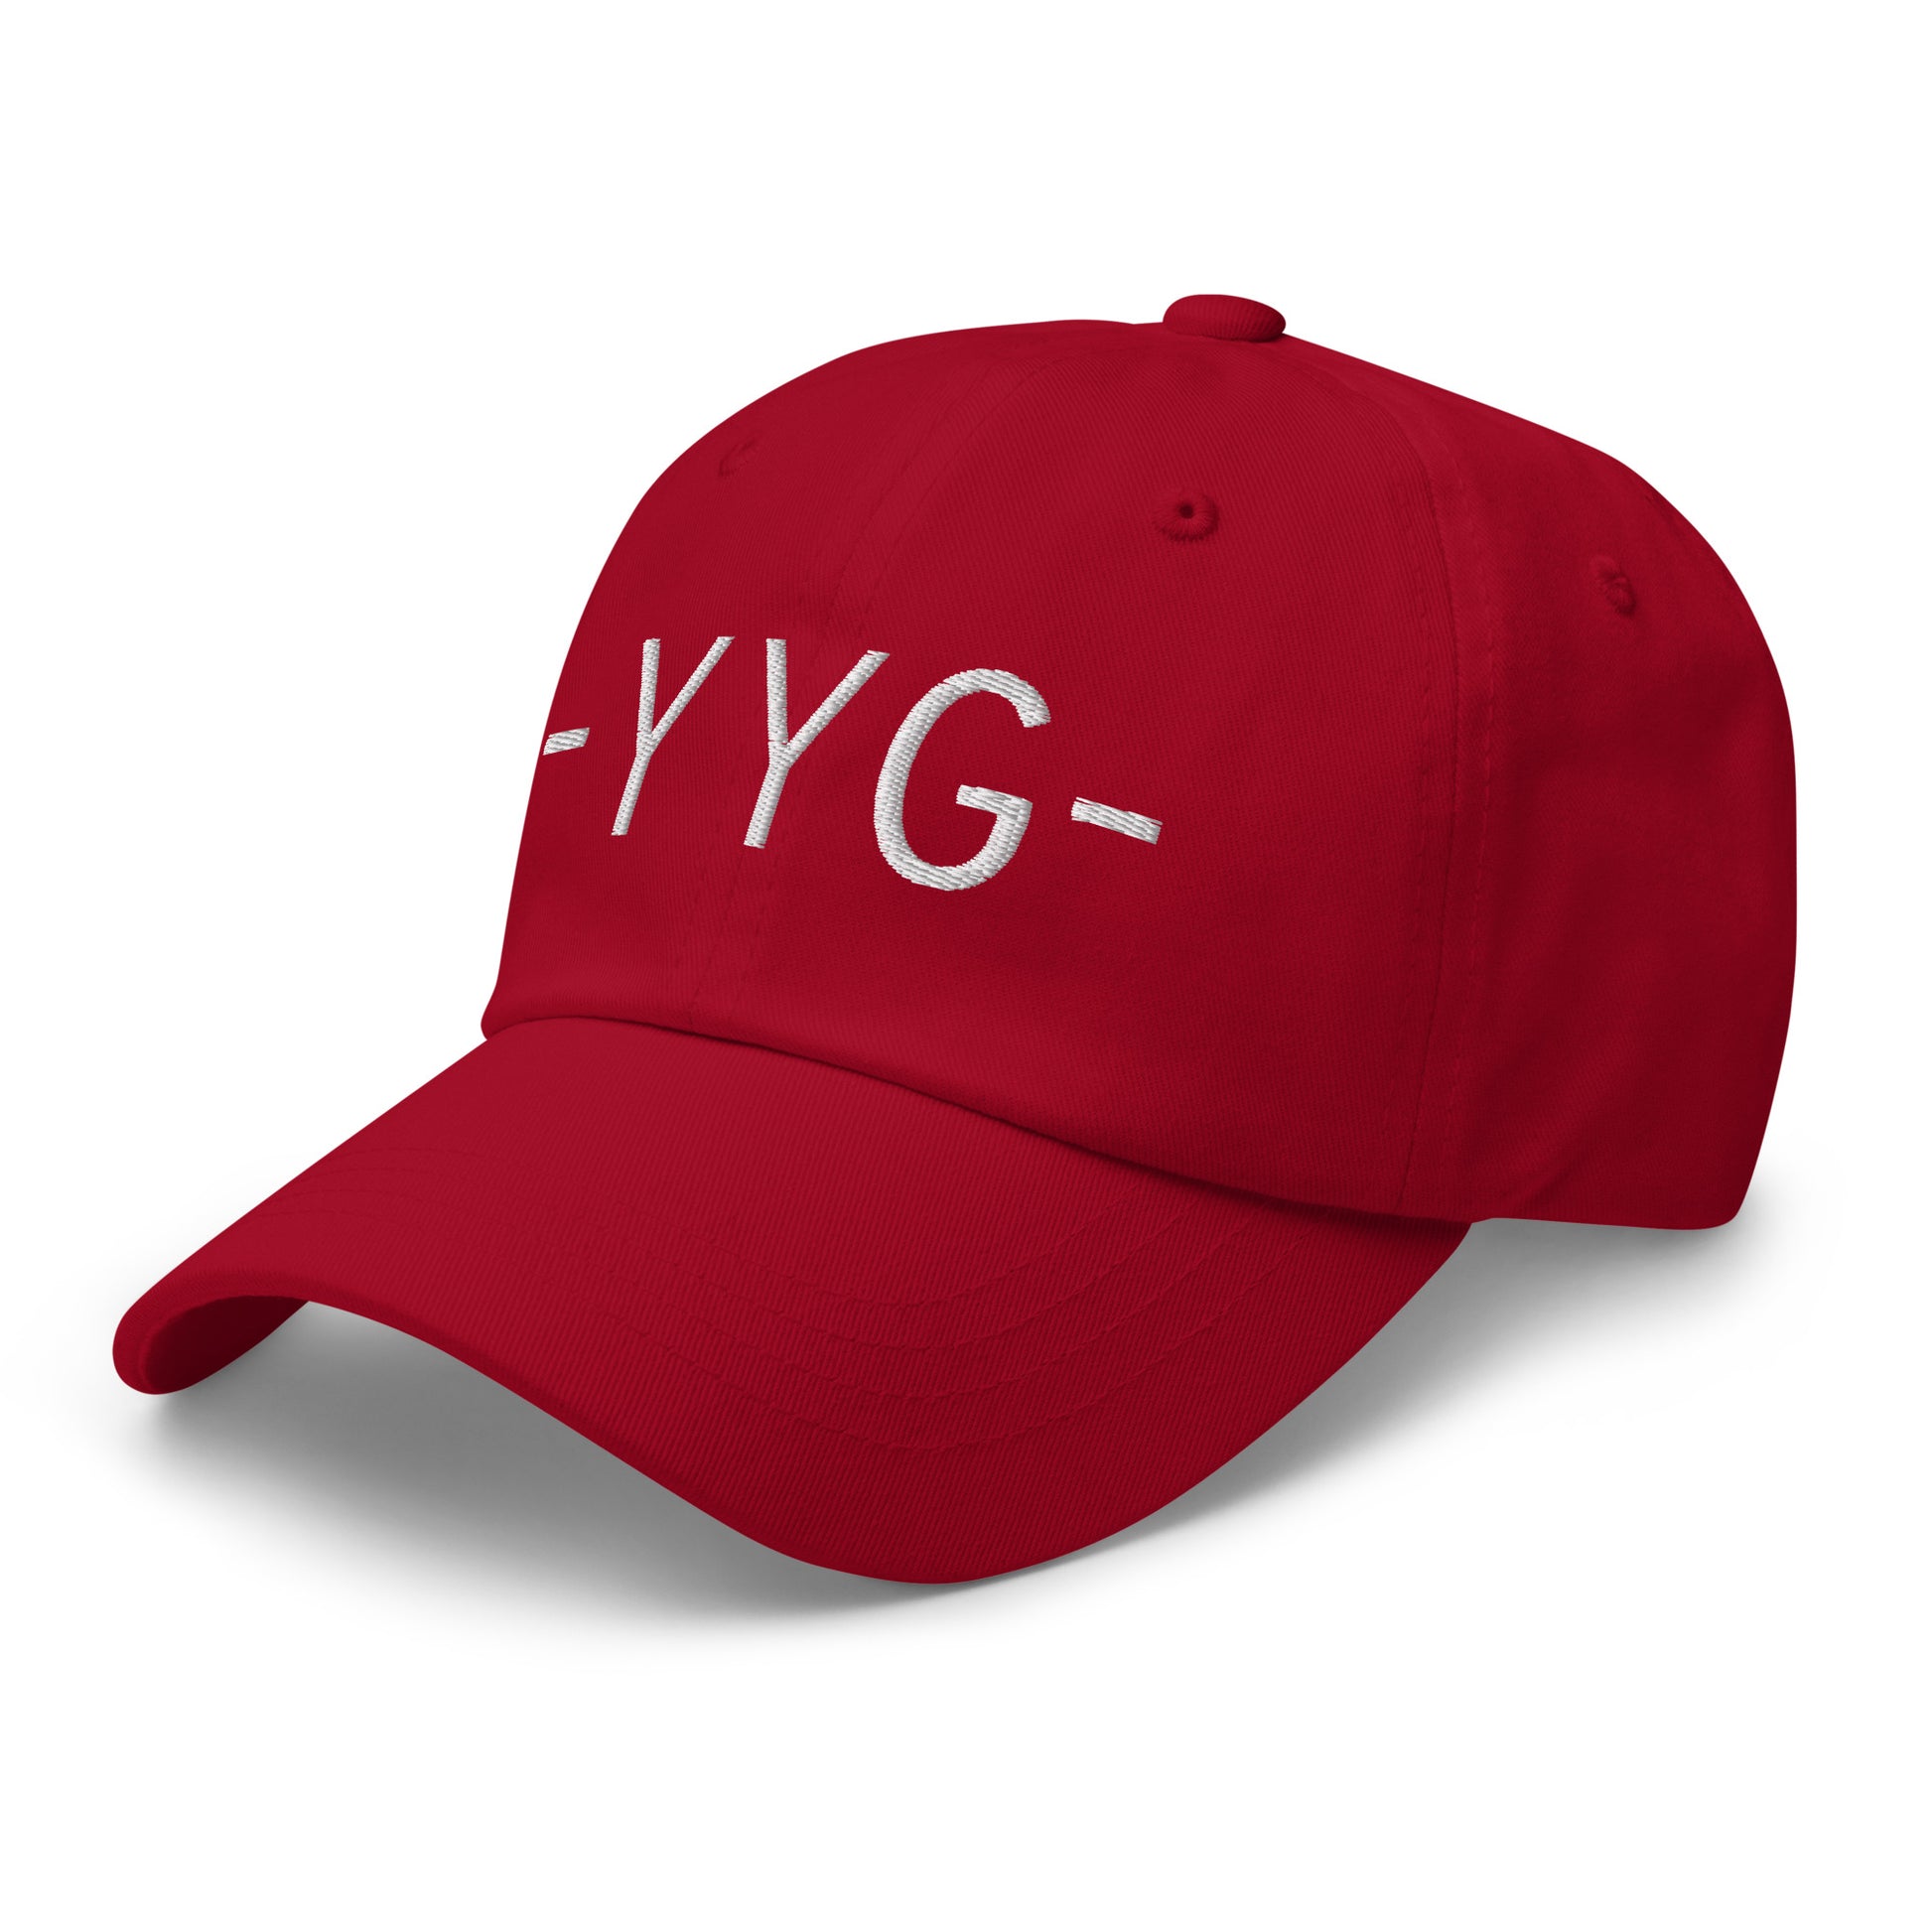 Souvenir Baseball Cap - White • YYG Charlottetown • YHM Designs - Image 01